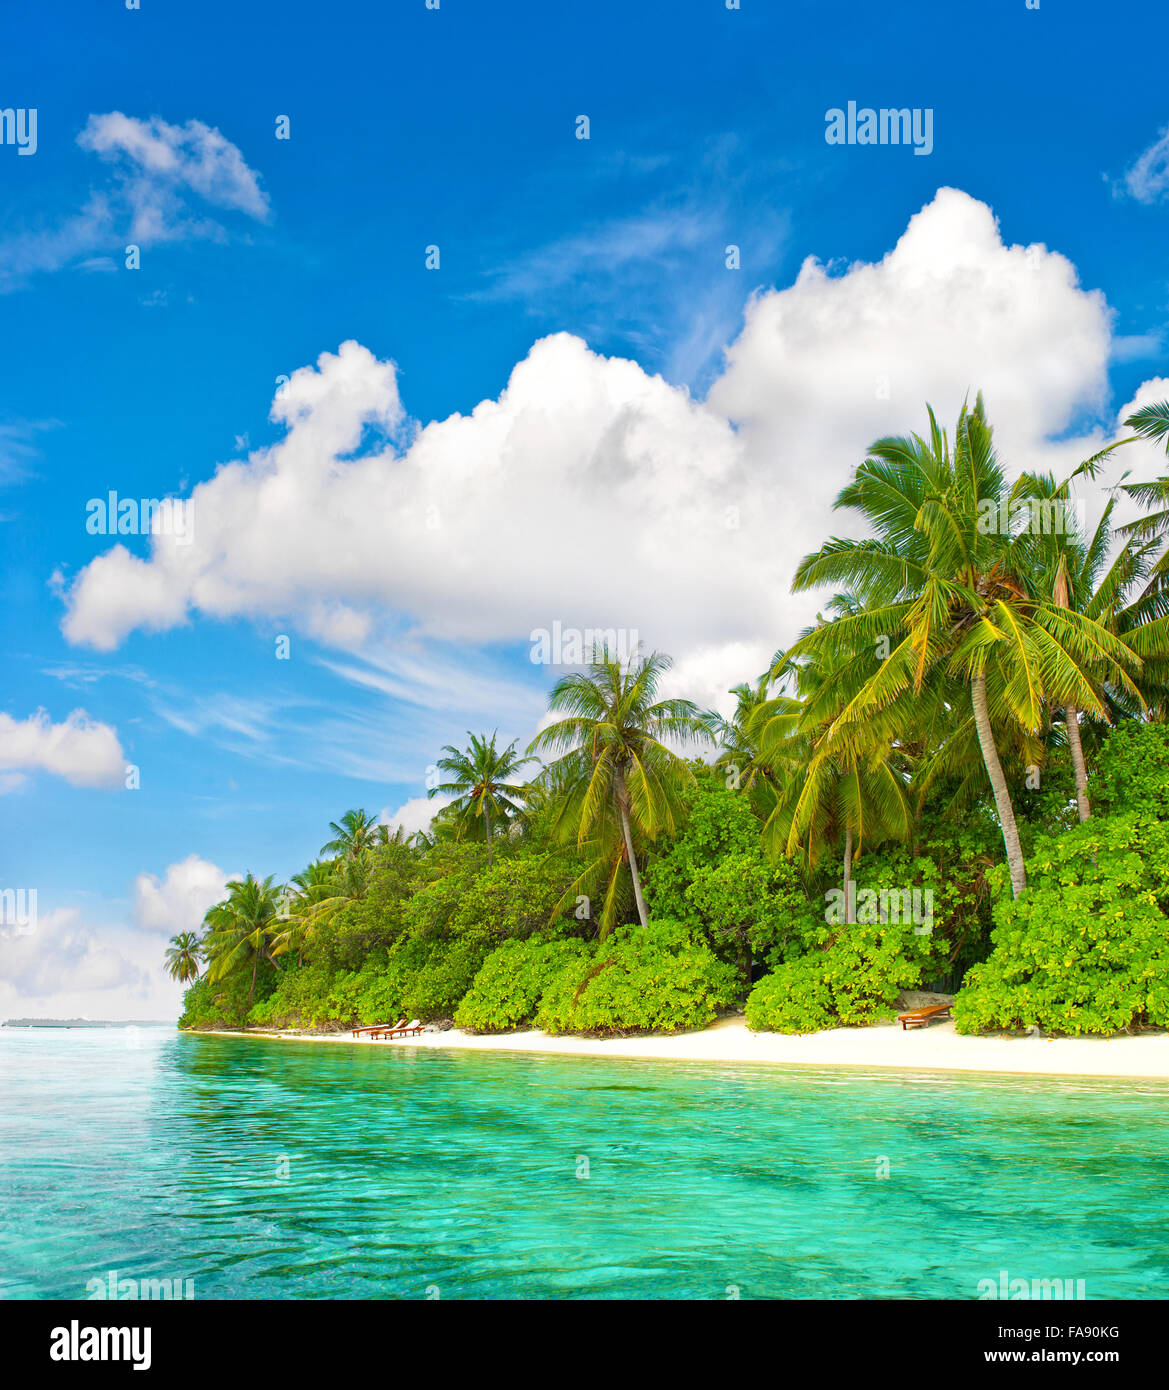 Plage de l'île tropicale. Palmiers. L'eau turquoise. Ciel bleu Banque D'Images